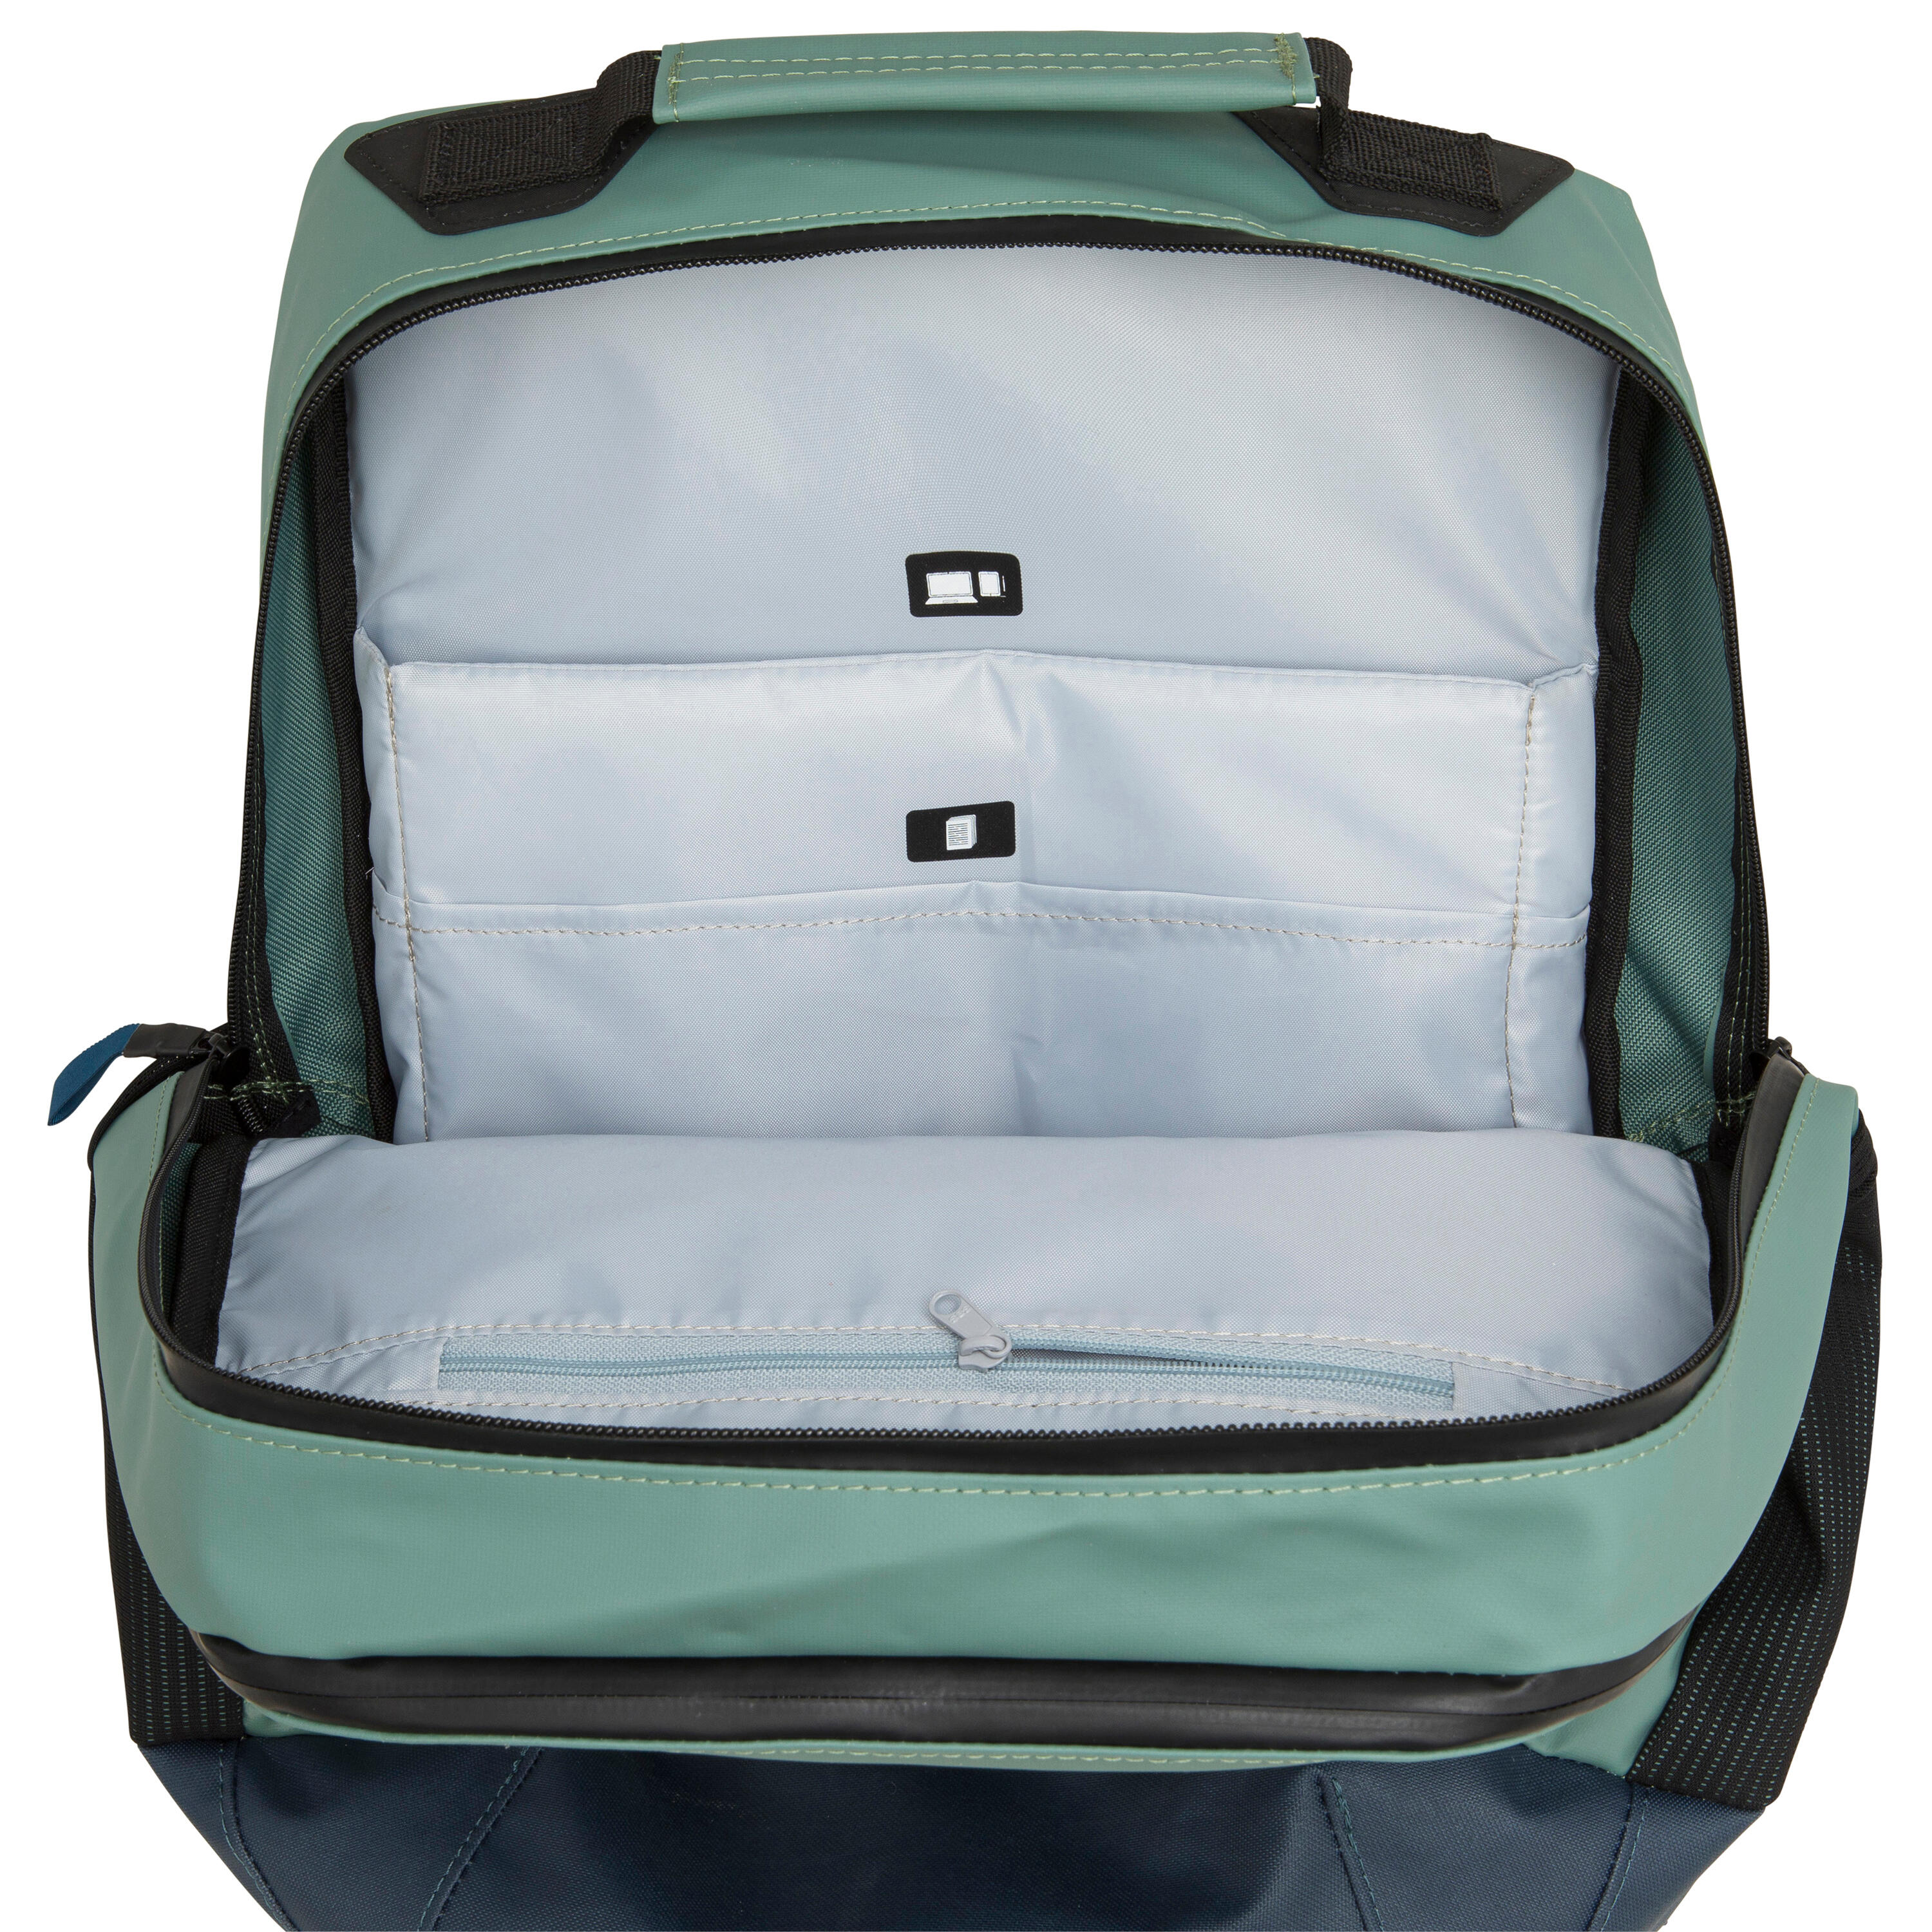 Waterproof backpack 25 litres - Kaki 10/11